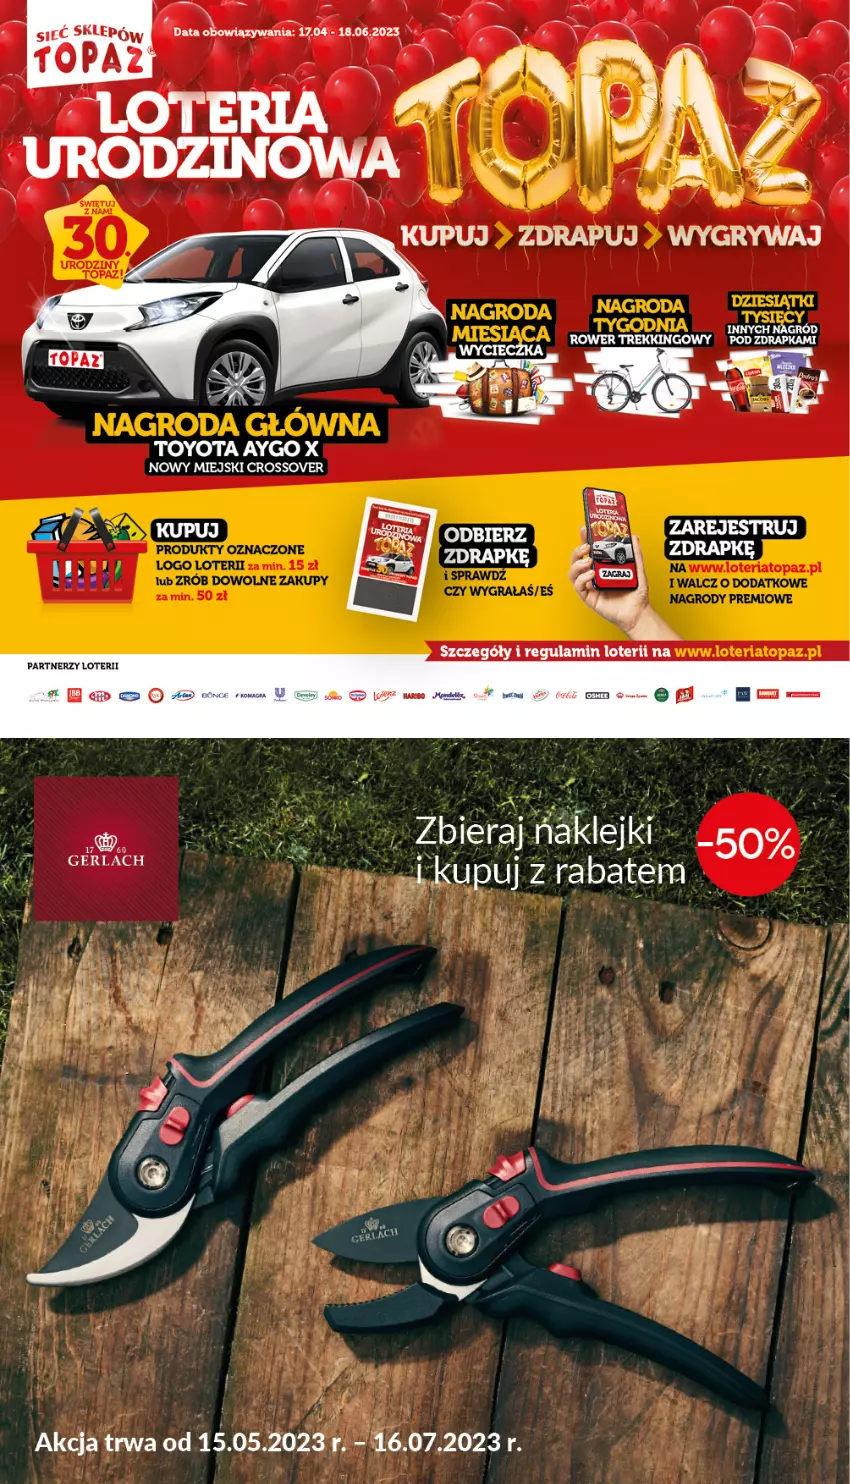 Gazetka promocyjna Topaz - Gazetka - ważna 17.04 do 18.06.2023 - strona 2 - produkty: Paola, Rower, Top, Toyo